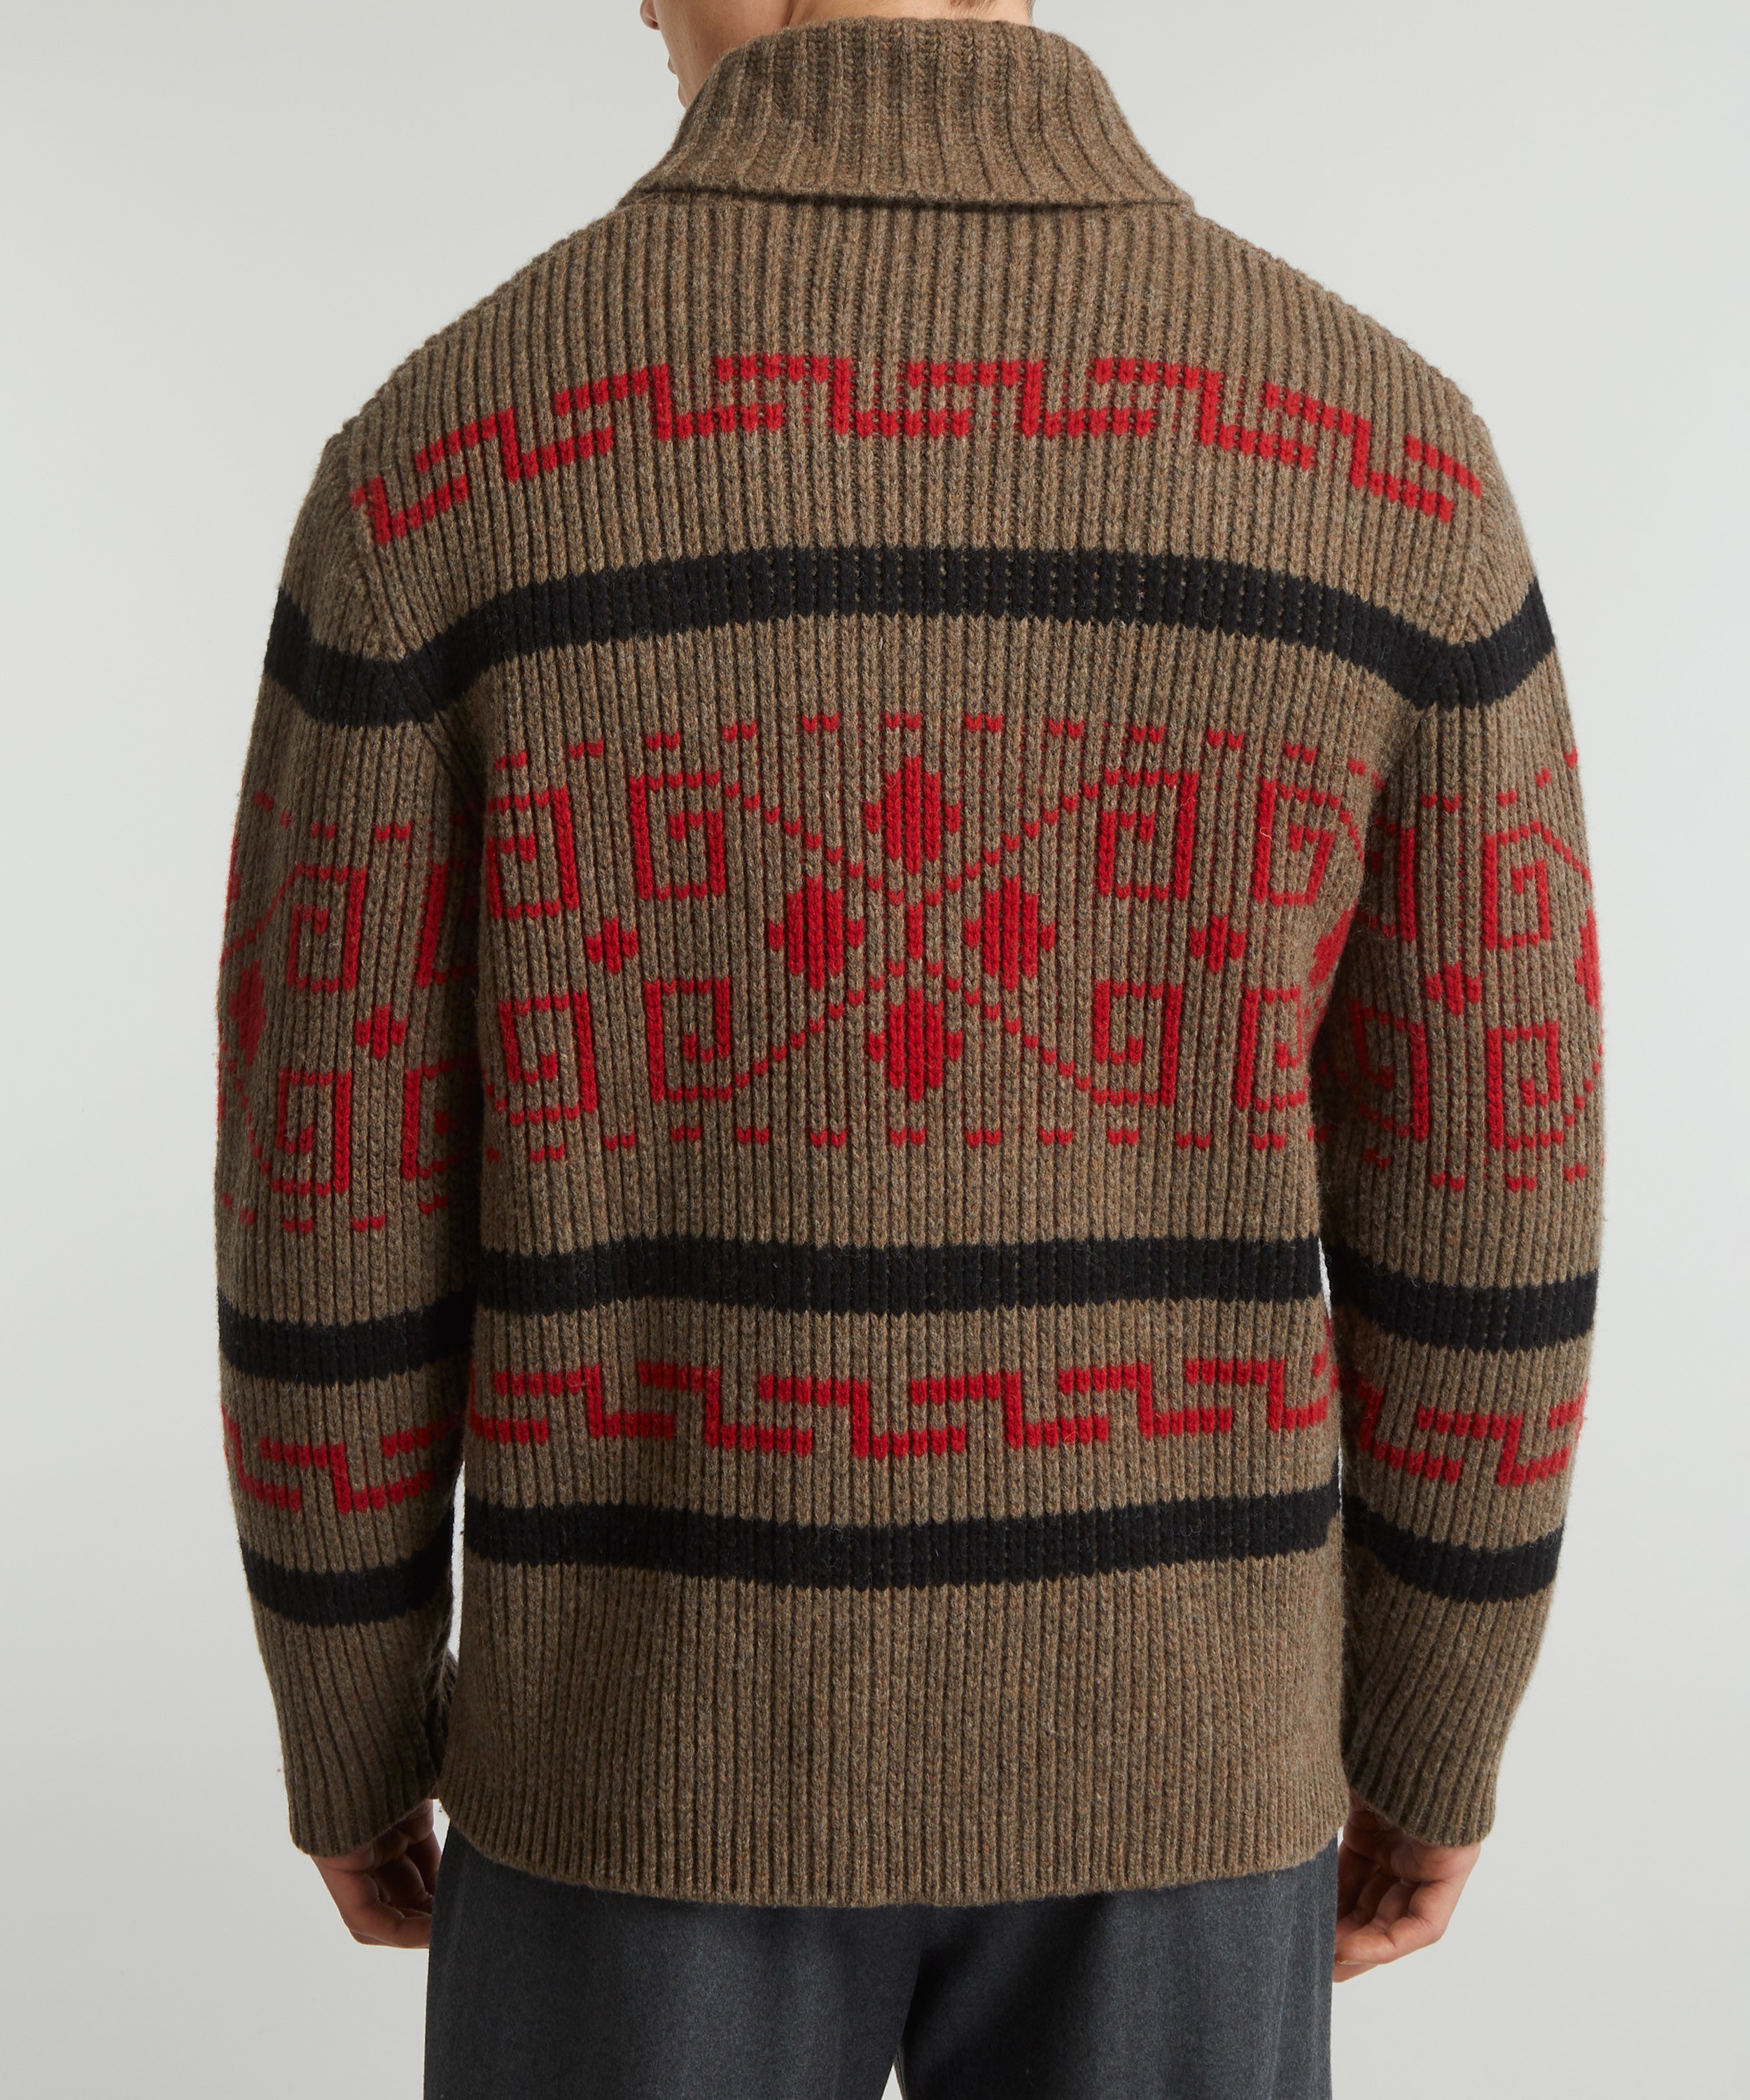 The Original Westerley Men's Sweater